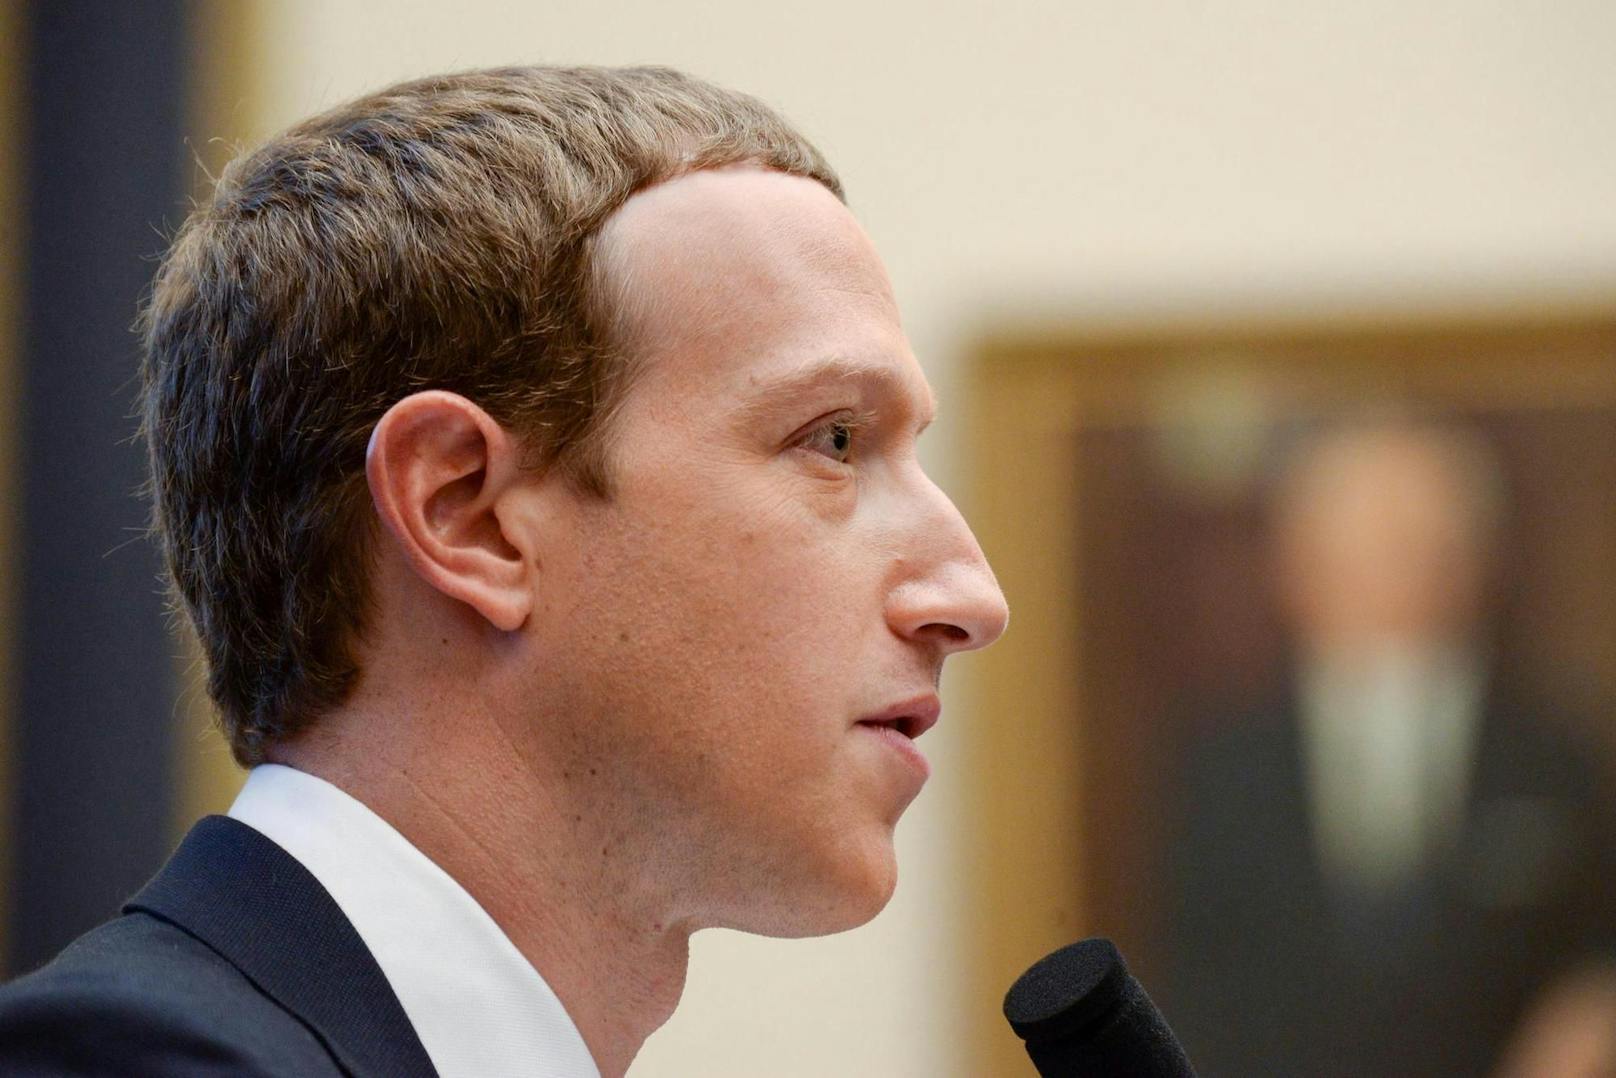 Fall Cambridge Analytica: Wenn er belangt wird, könnten dem Facebook-Chef Mark Zuckerberg hohe Geldstrafen drohen.